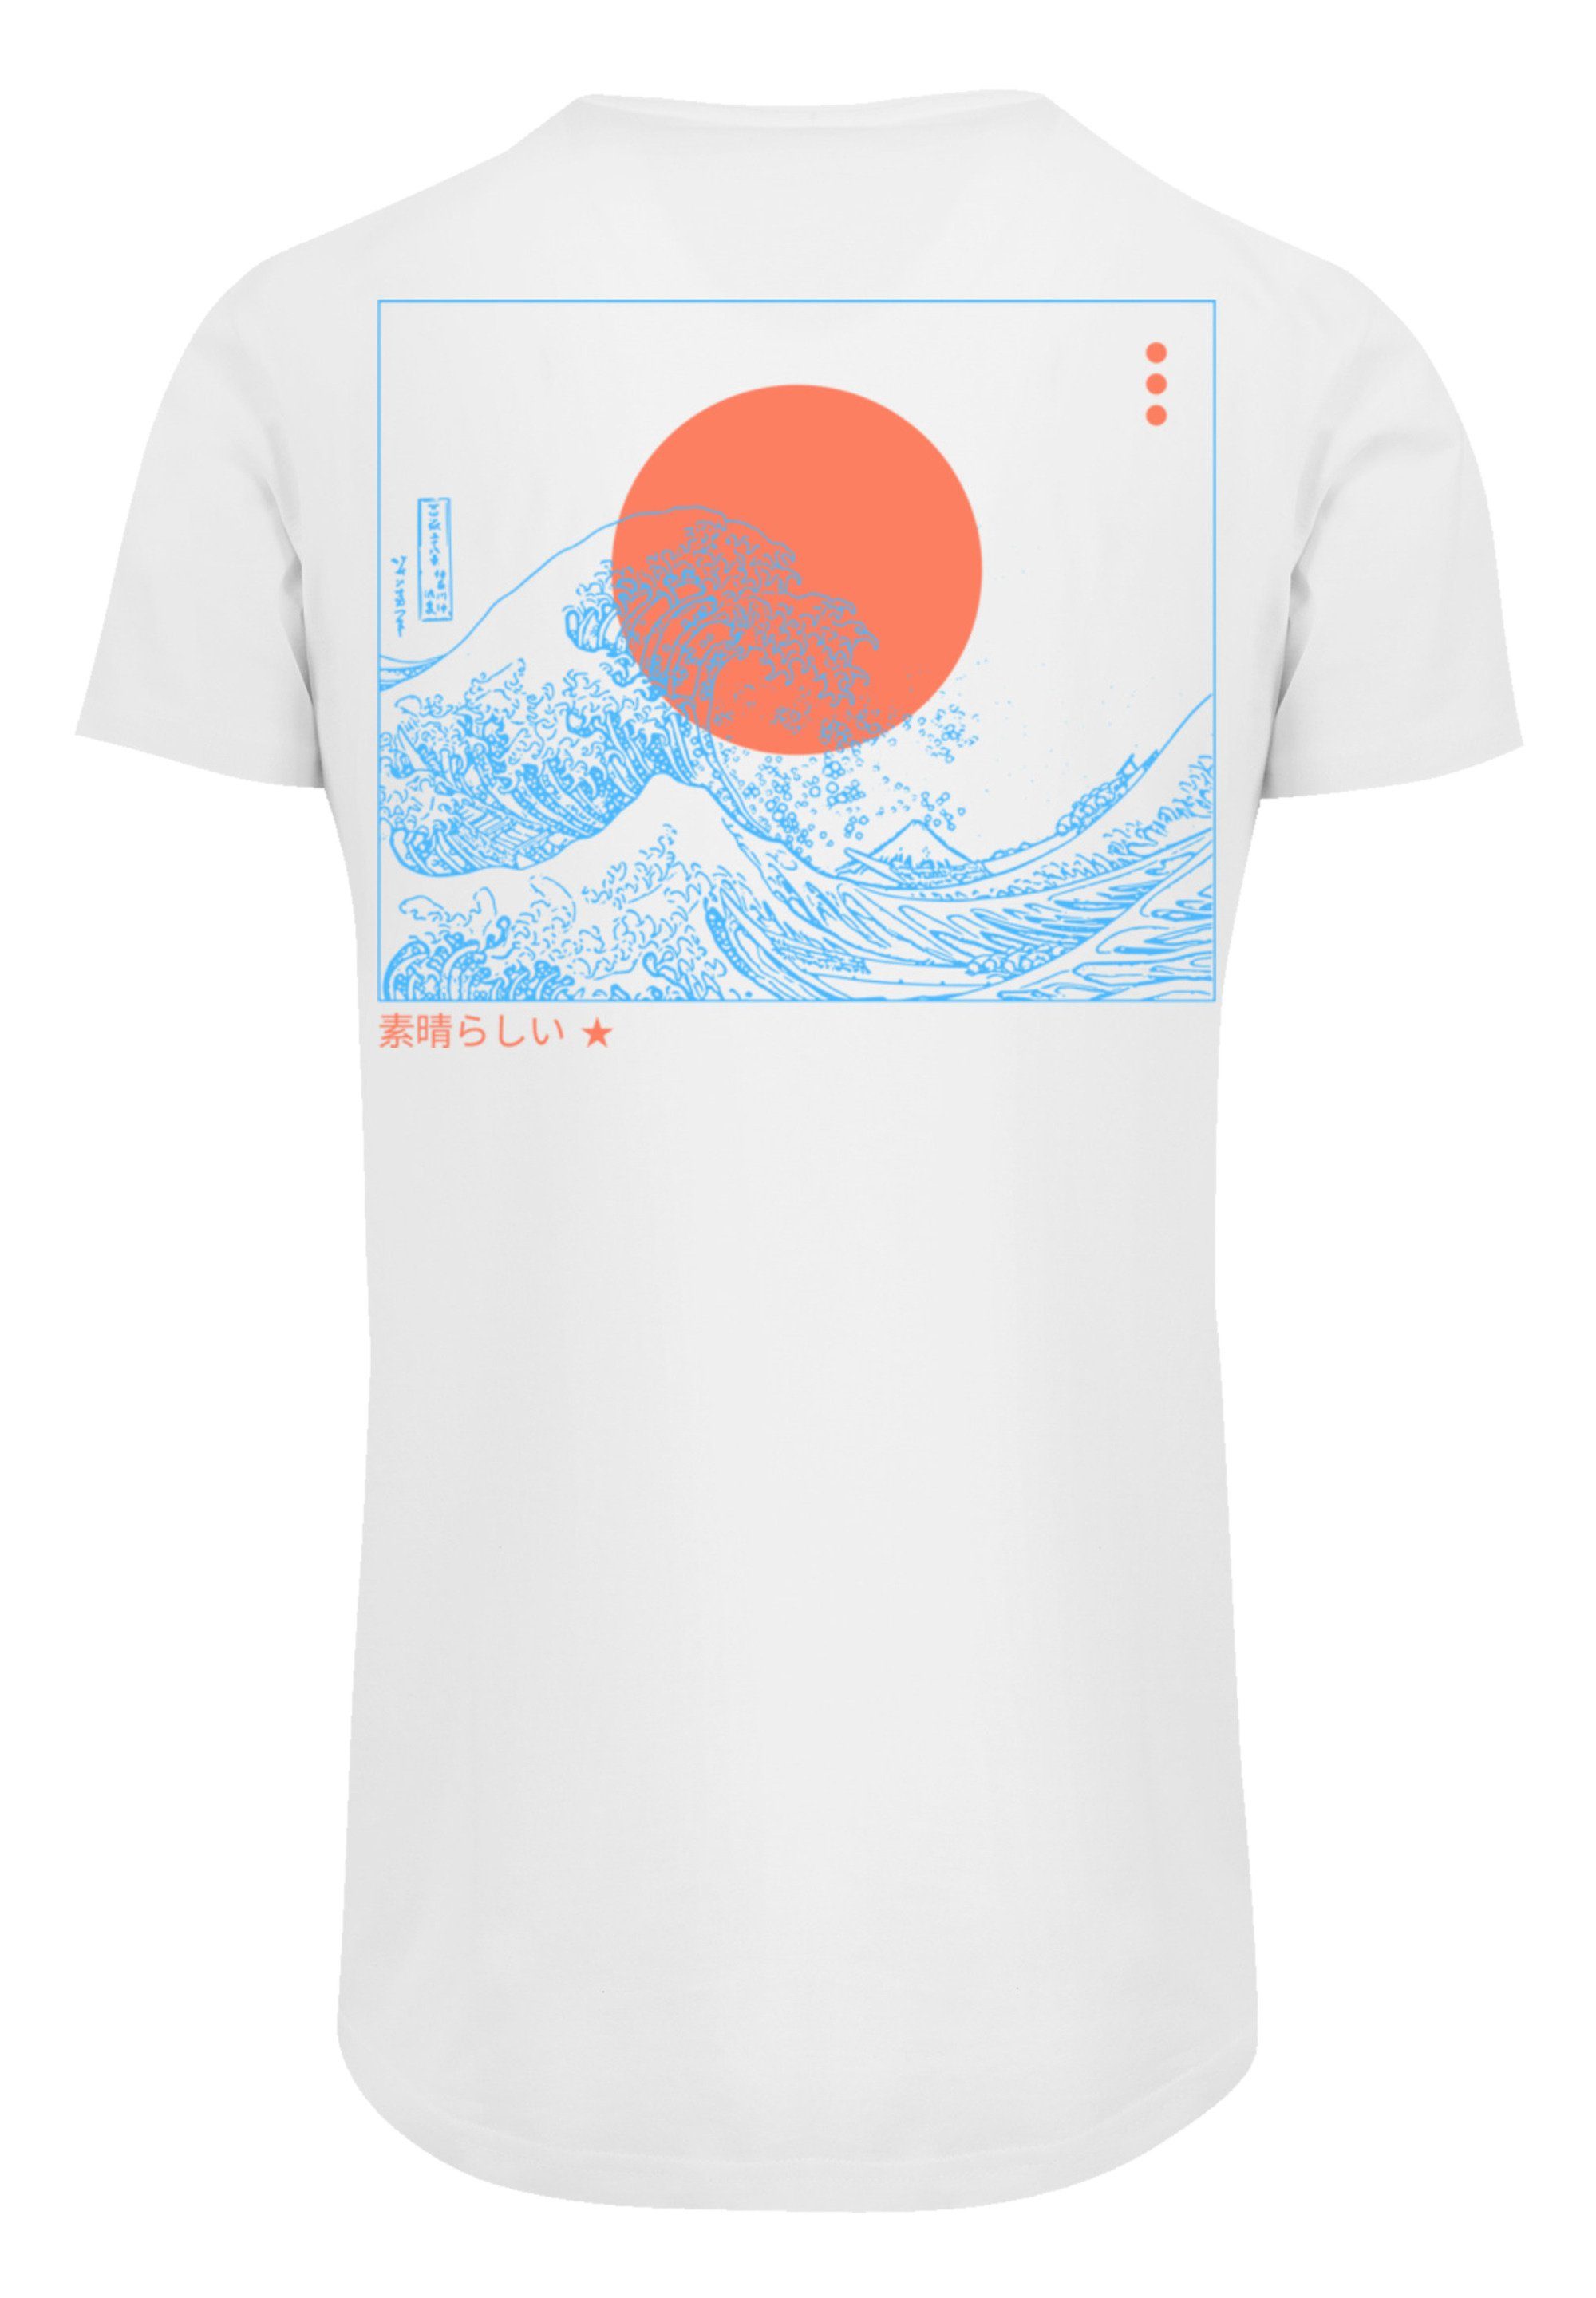 Welle Kanagawa Print F4NT4STIC weiß T-Shirt SIZE PLUS